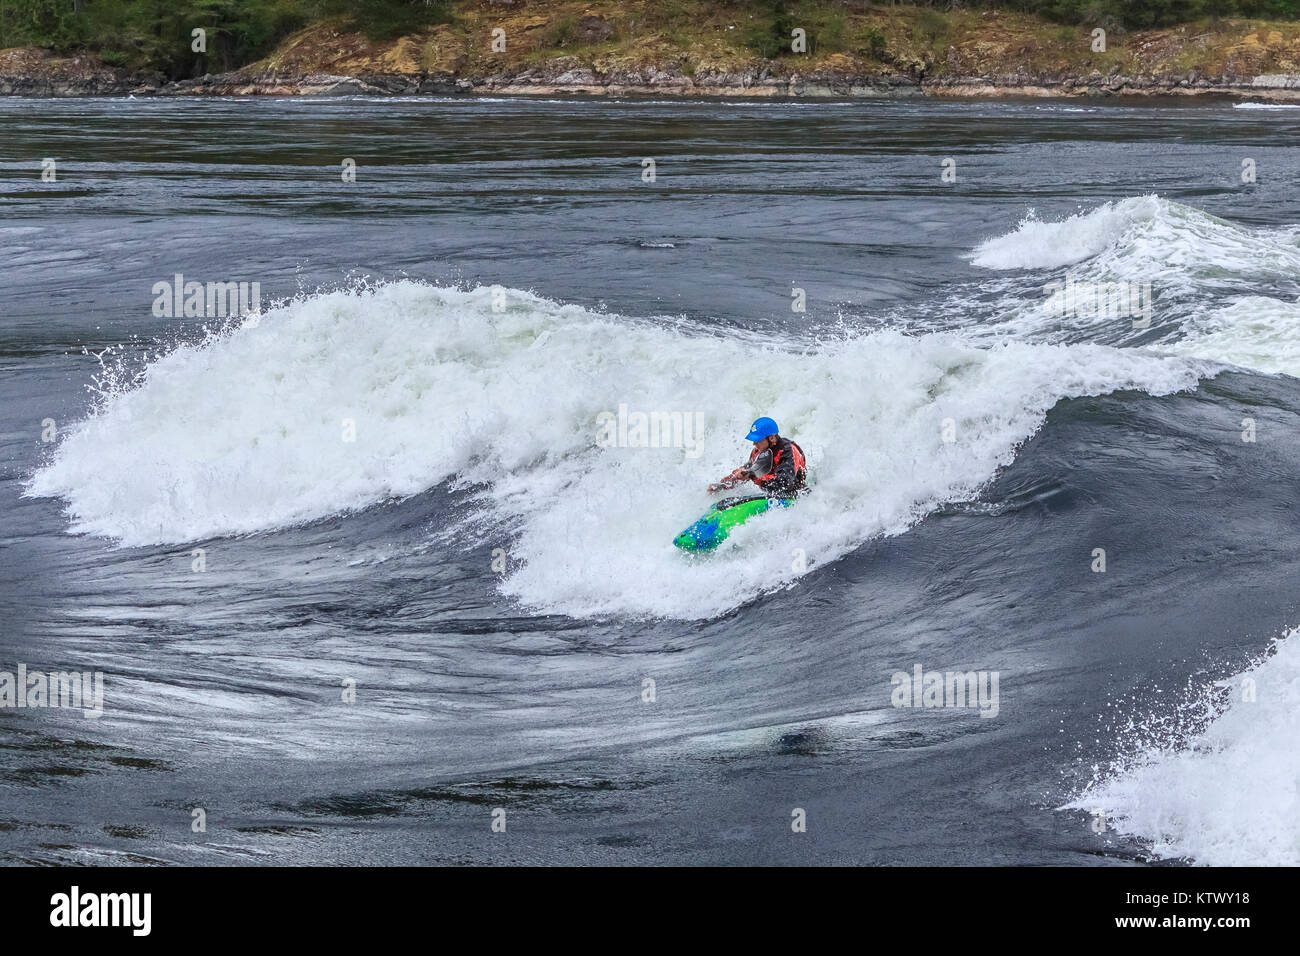 Als das Wasser um ihn herum Butterfässer, ein Extrem-kajakfahrer reitet das Gesicht eines großen, schnellen Wellen in Sechelt Rapids, BC, eines der schnellsten Gezeiten der Welt vor sich geht. Stockfoto